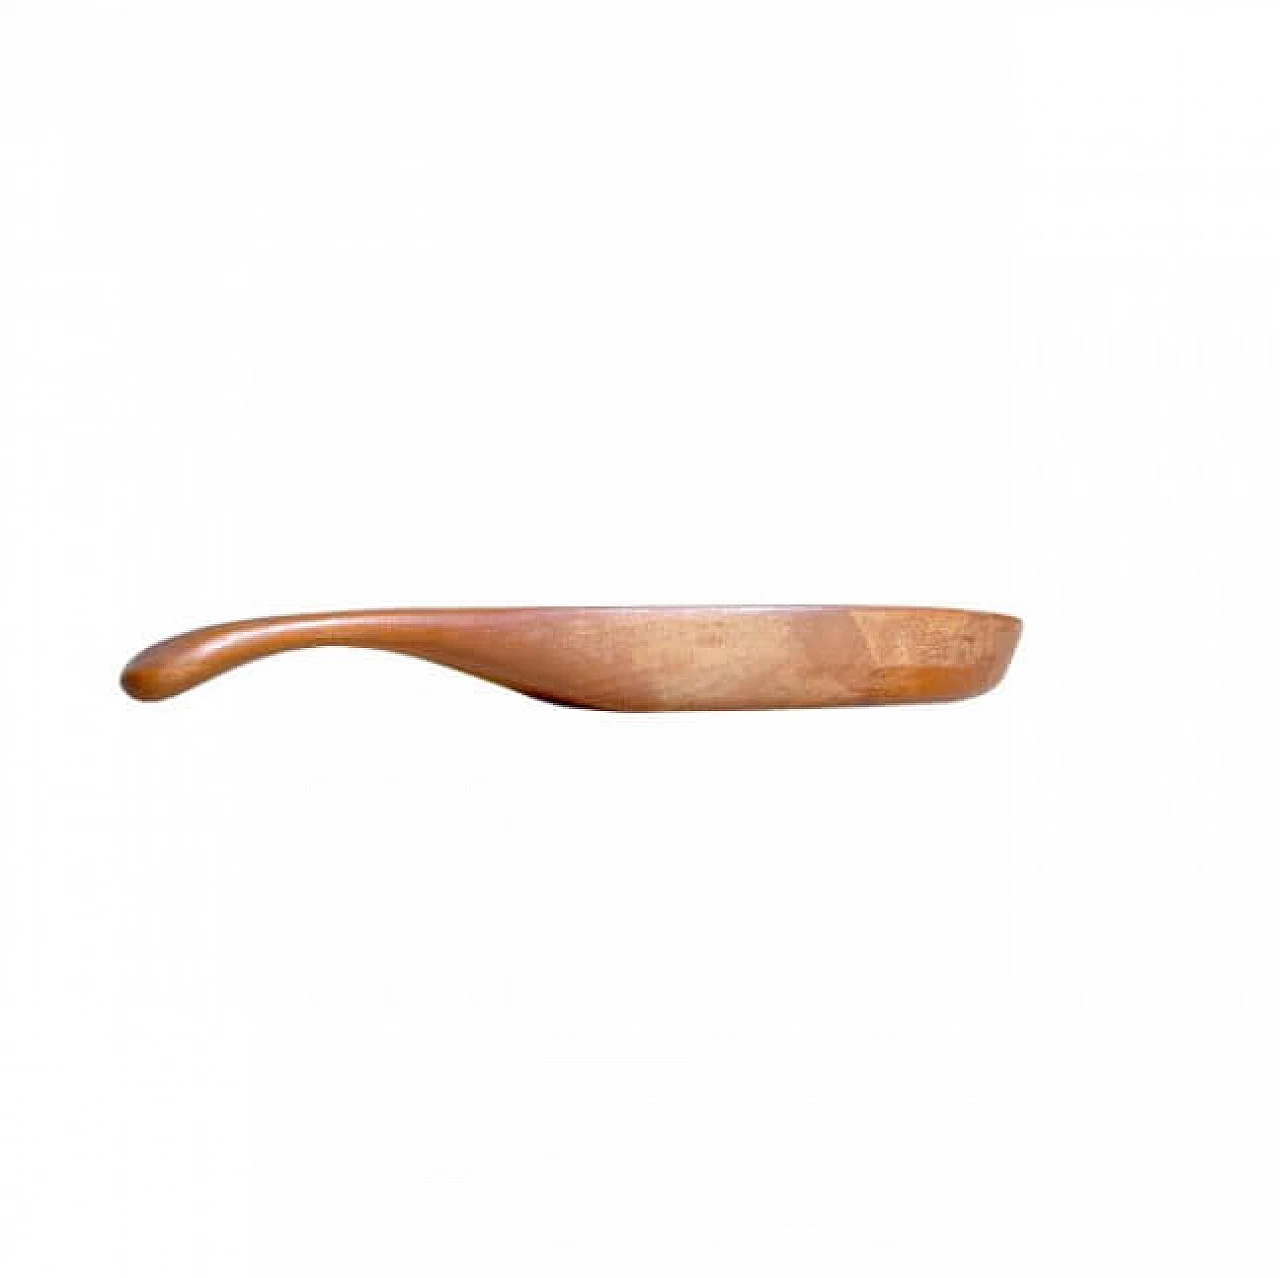 Vassoio scolastico in legno per formaggi di Anri Form, anni '60 1259412